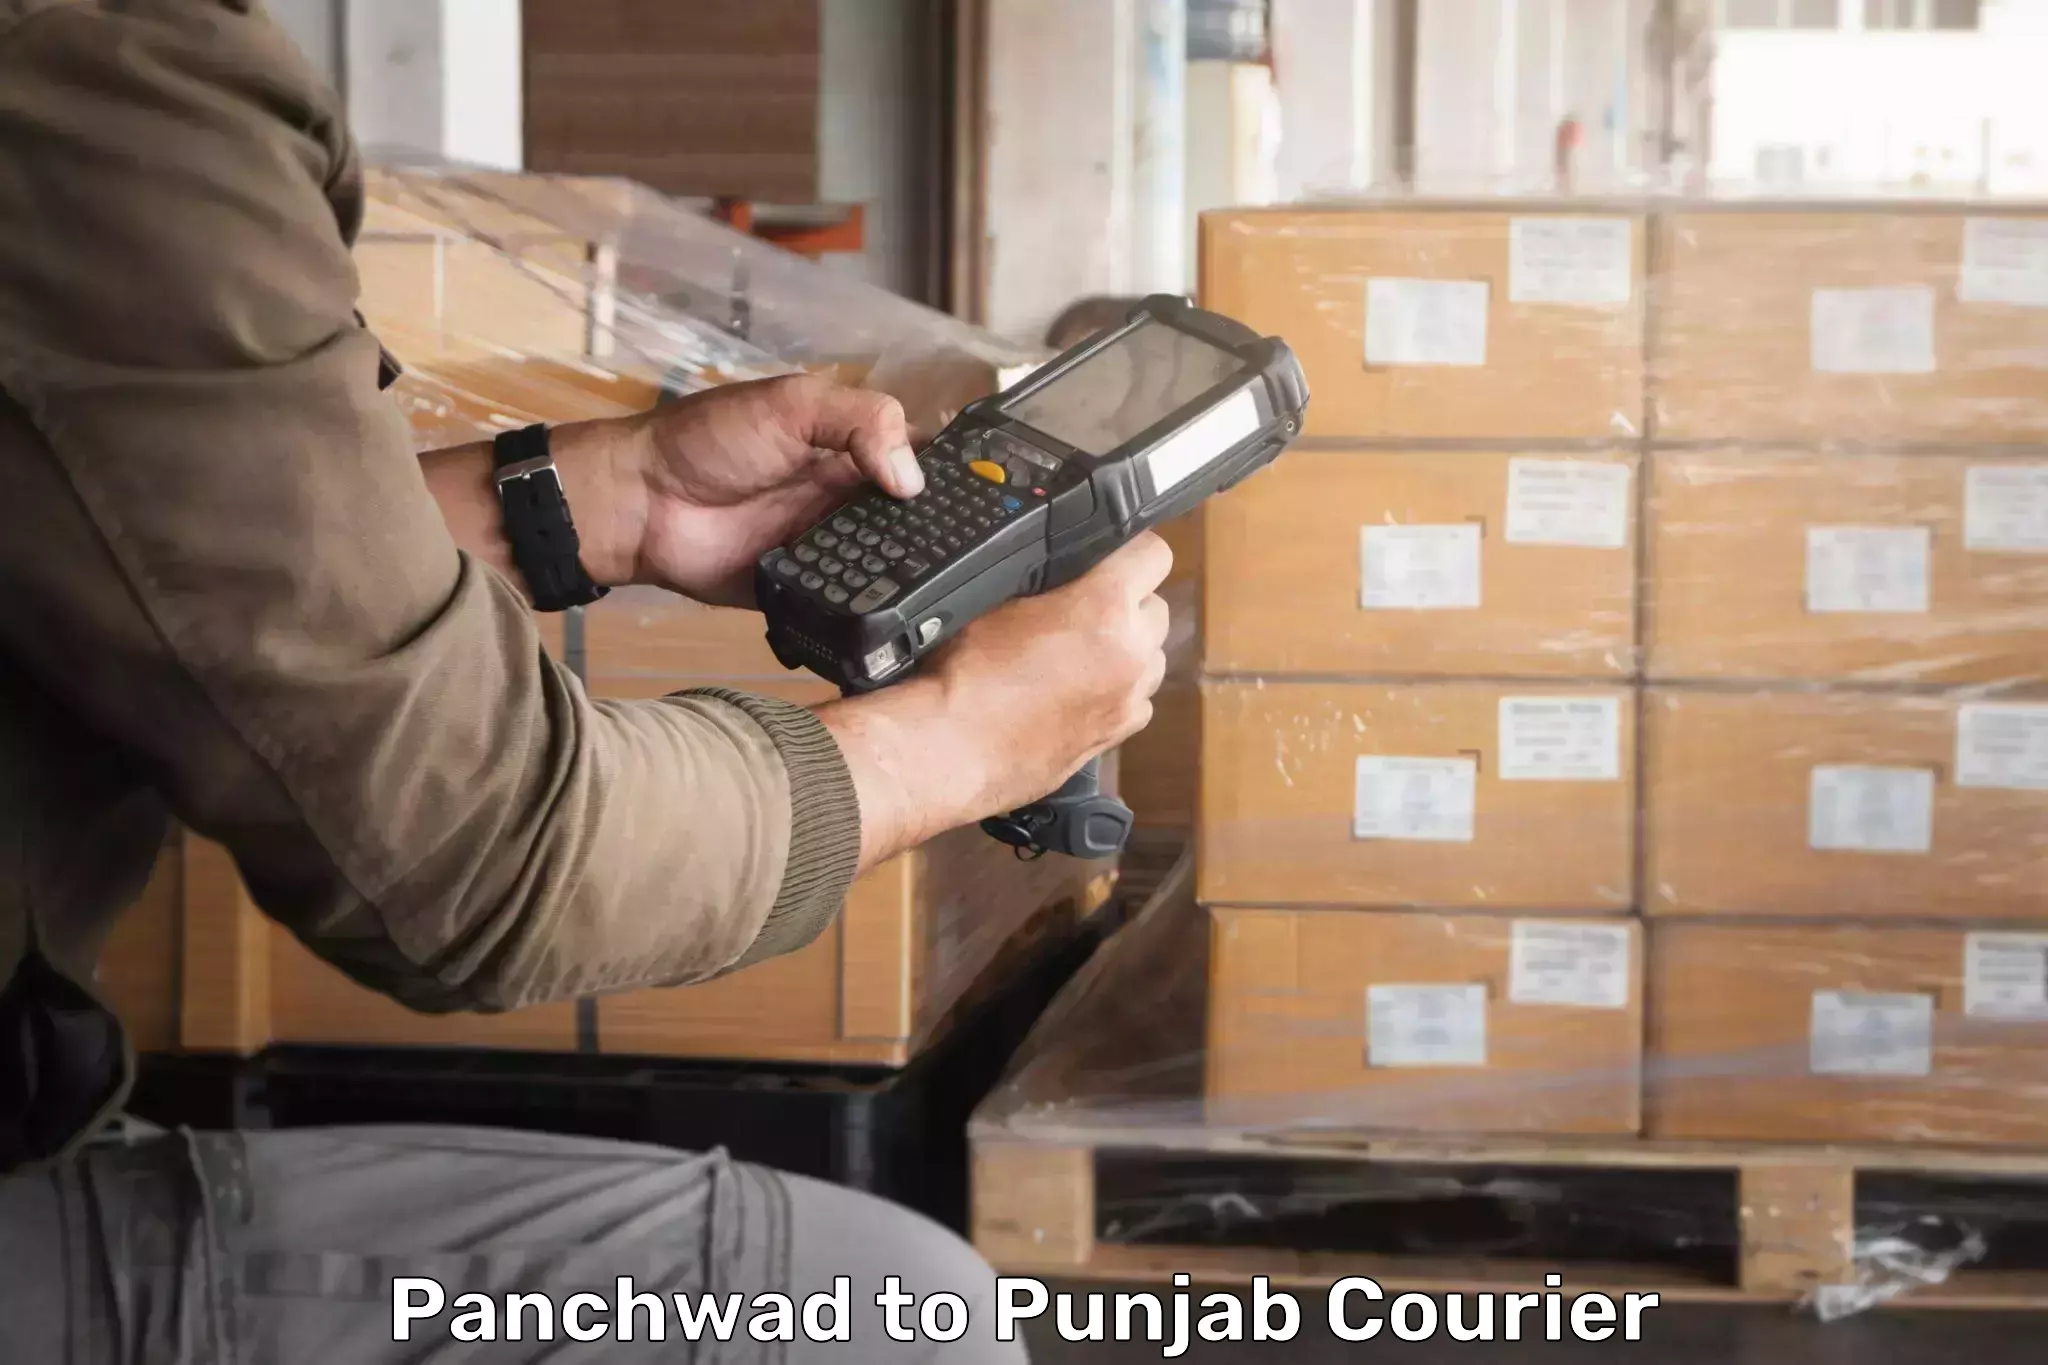 Express logistics service Panchwad to Dinanagar